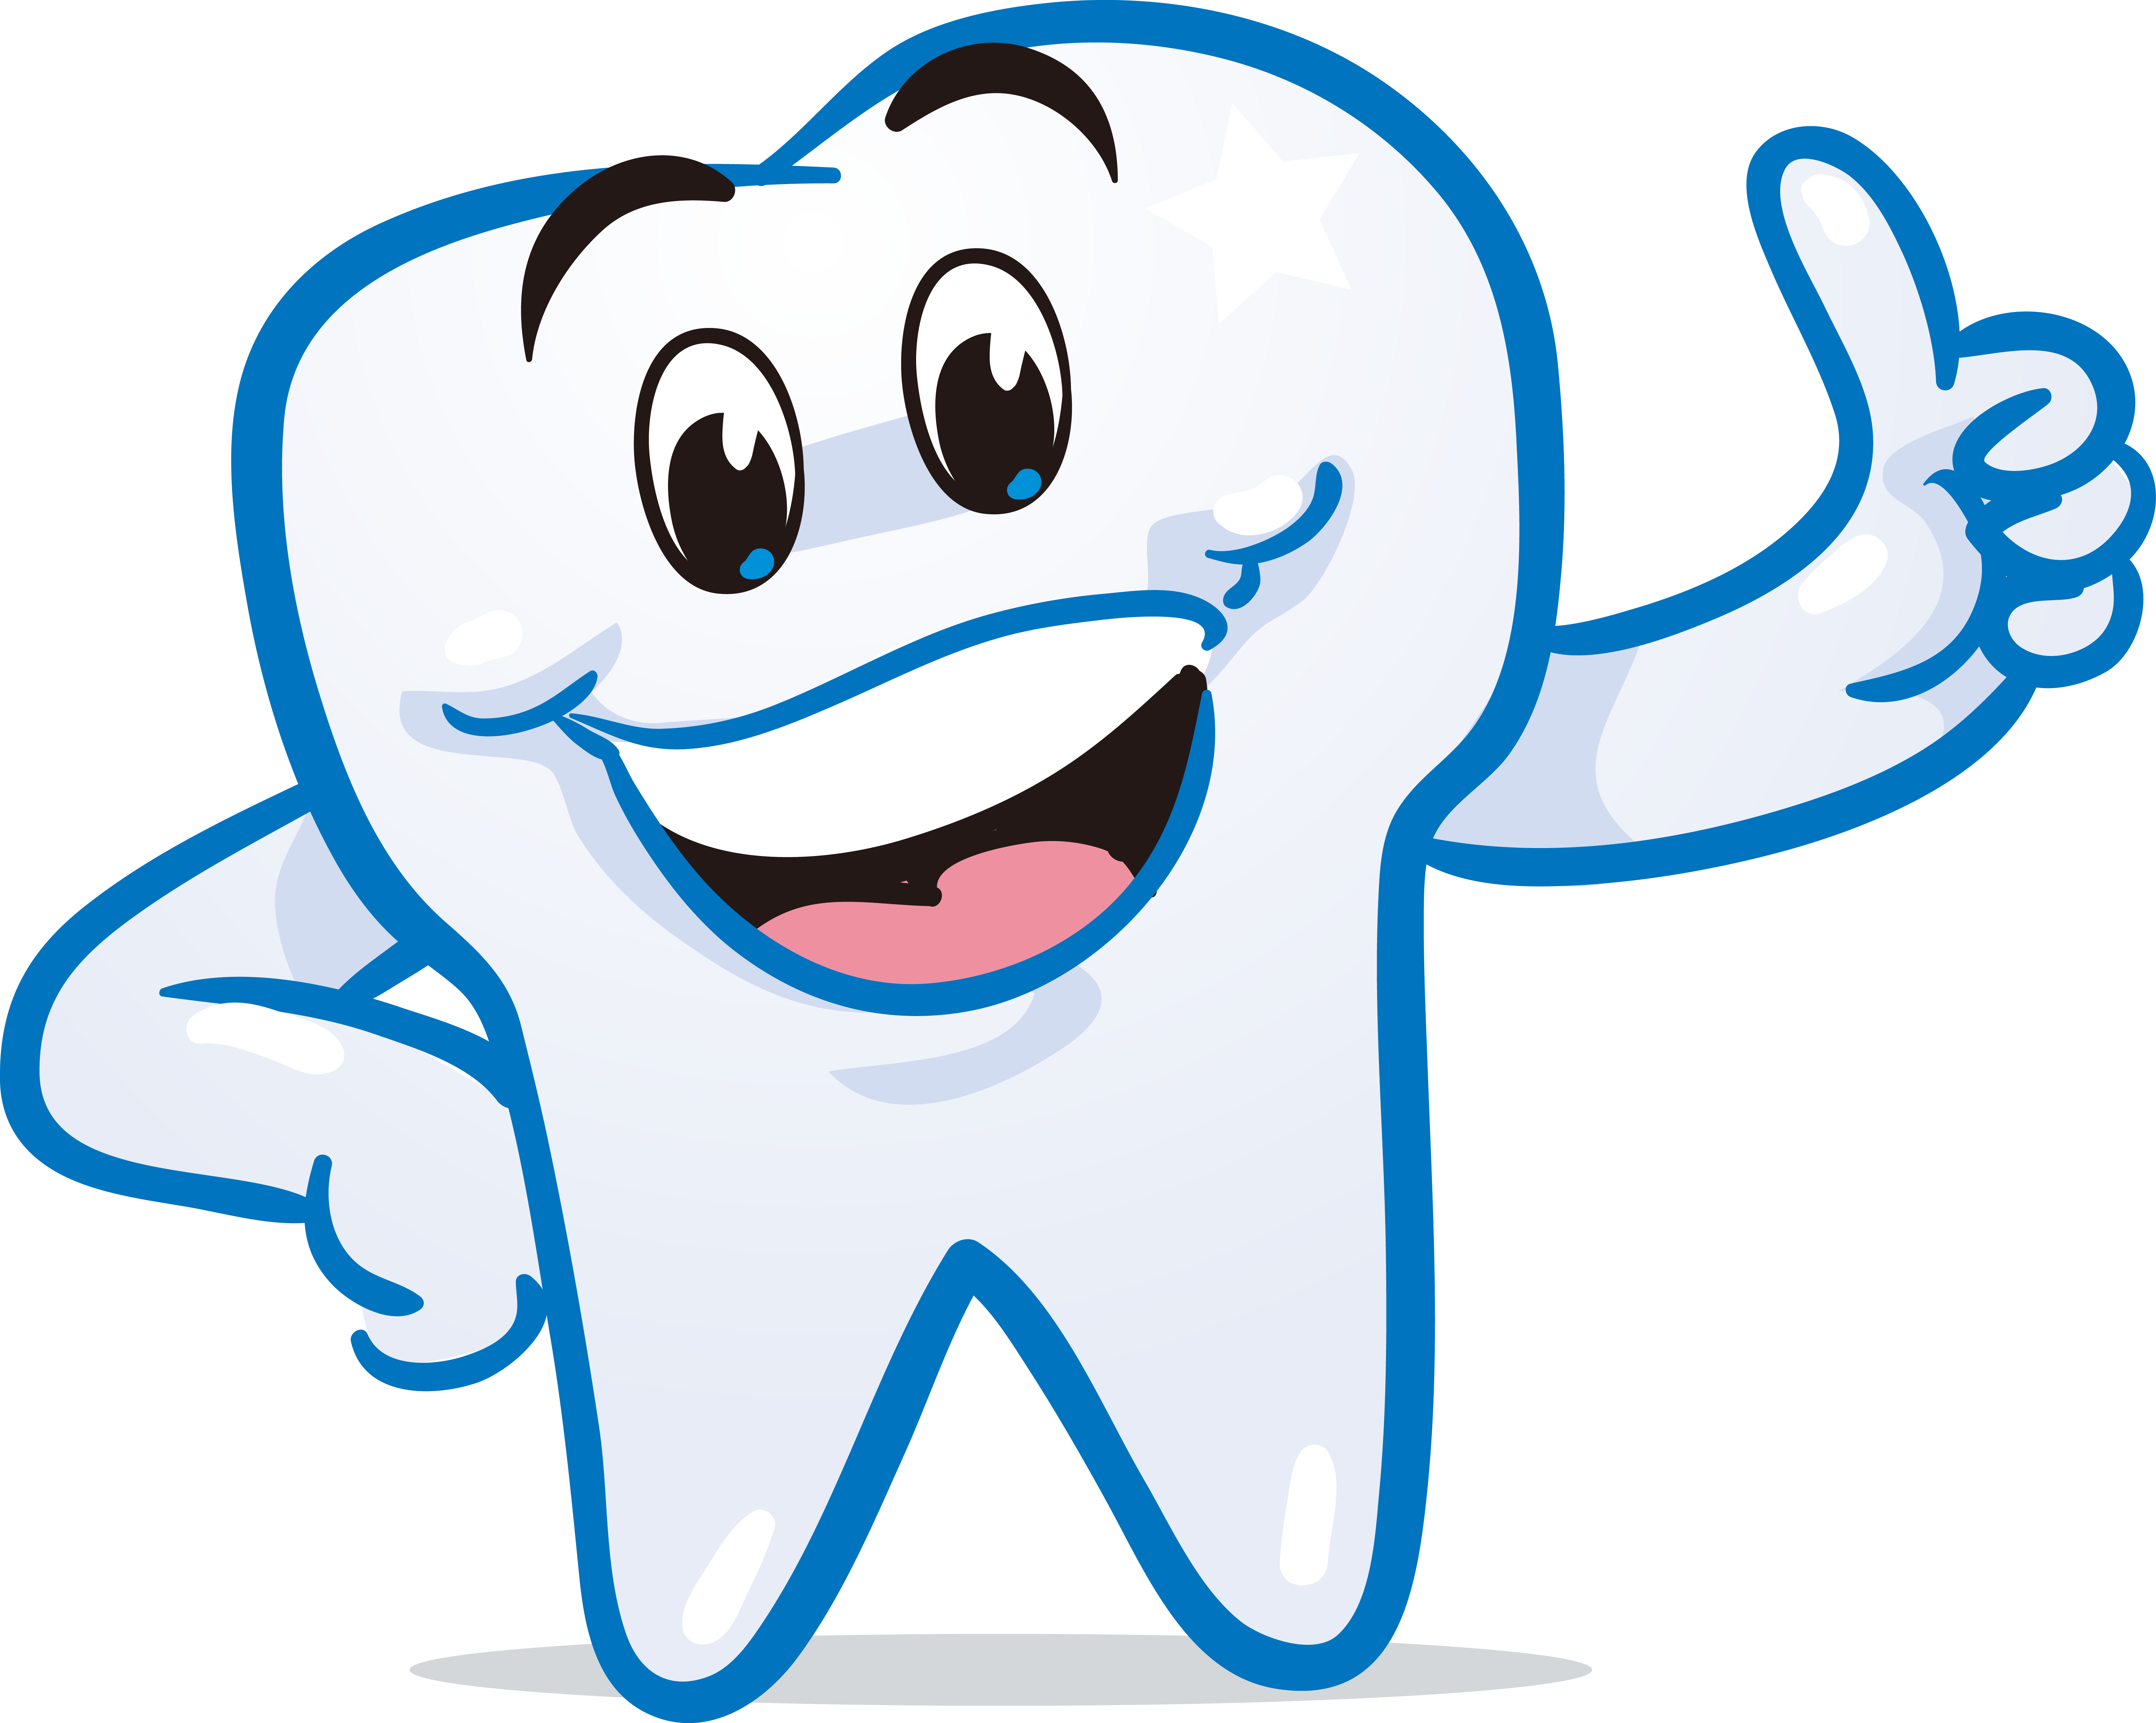 271 - Teeth Logo On Smile (6726x5374)